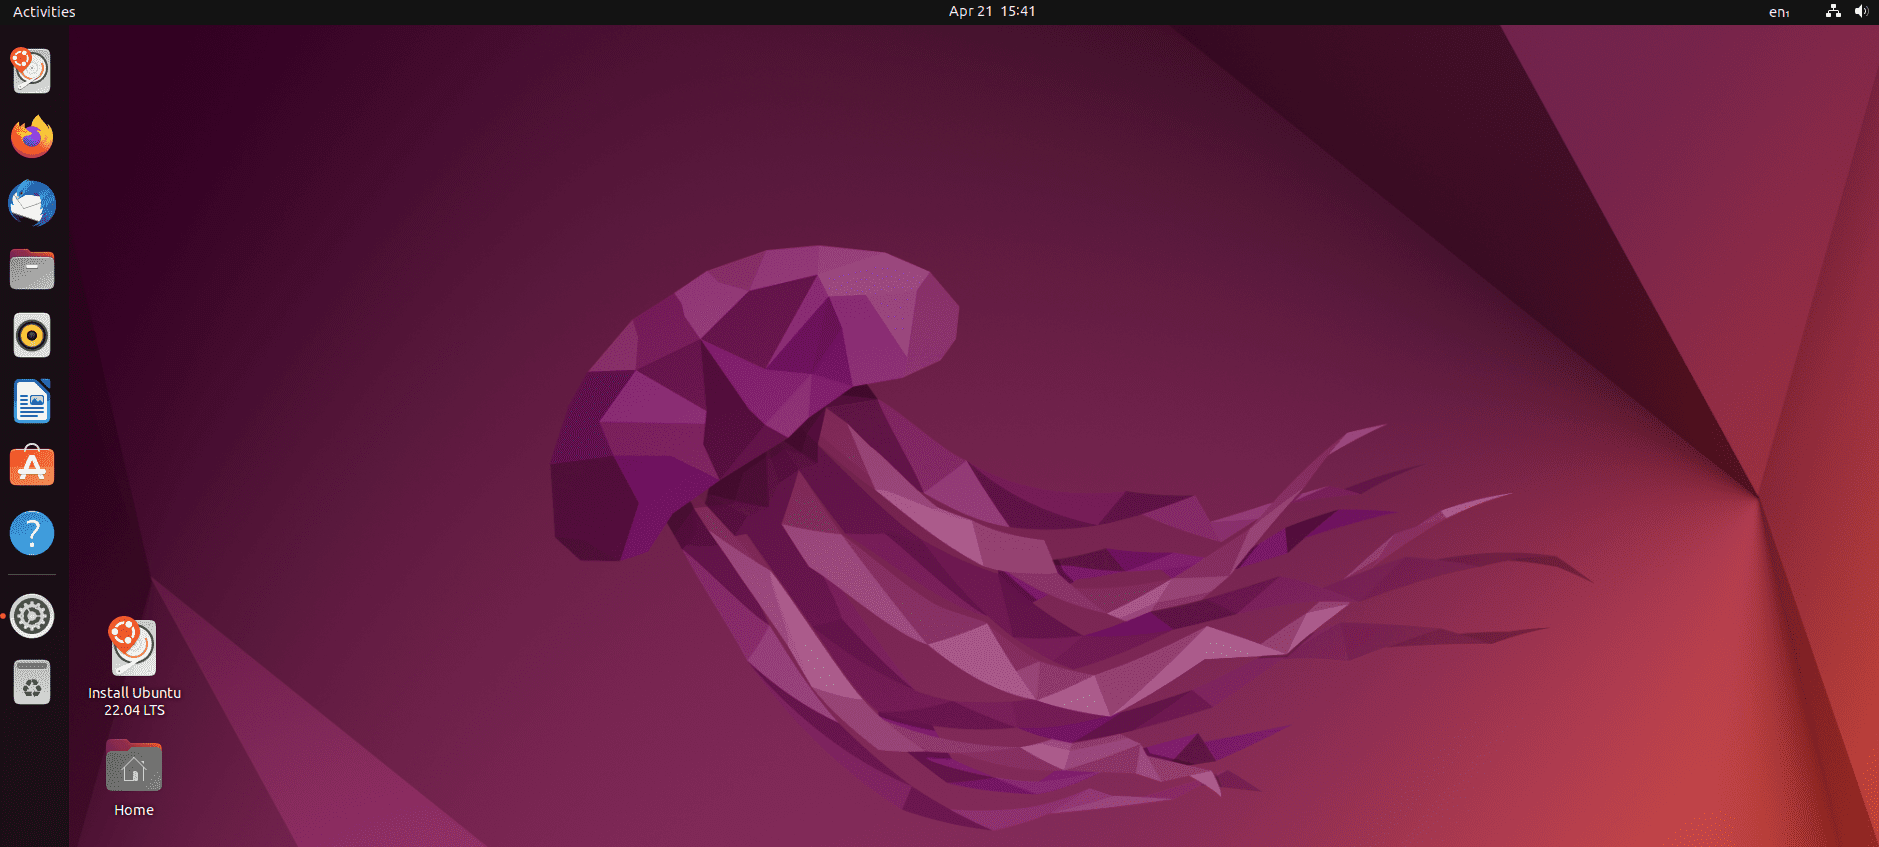 ubuntu 22.04 lts de escritorio